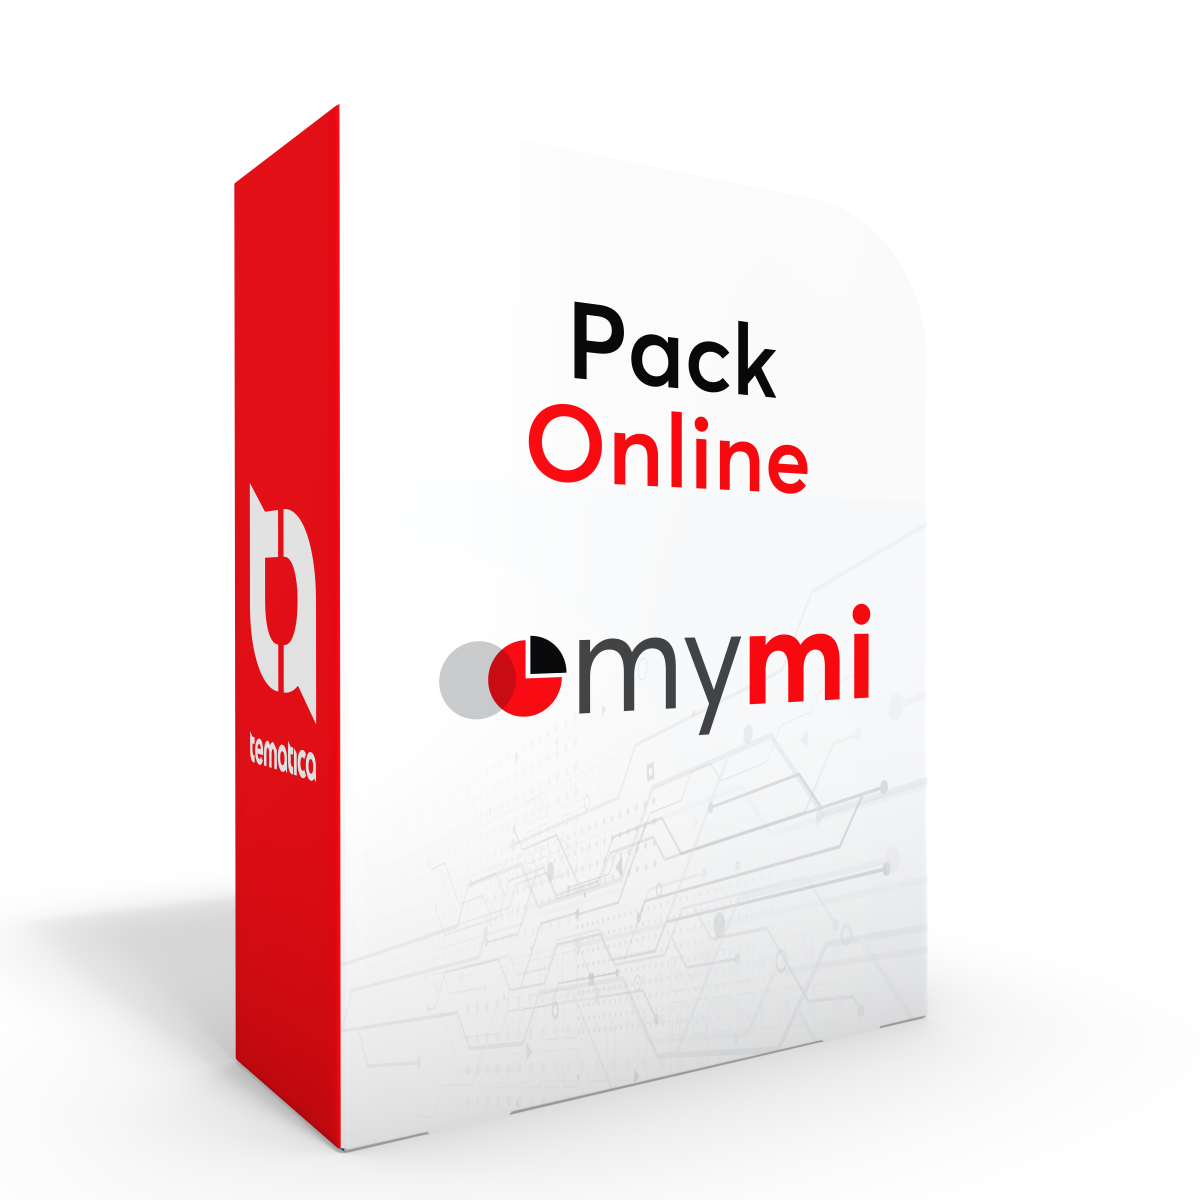 Pack online - mymi